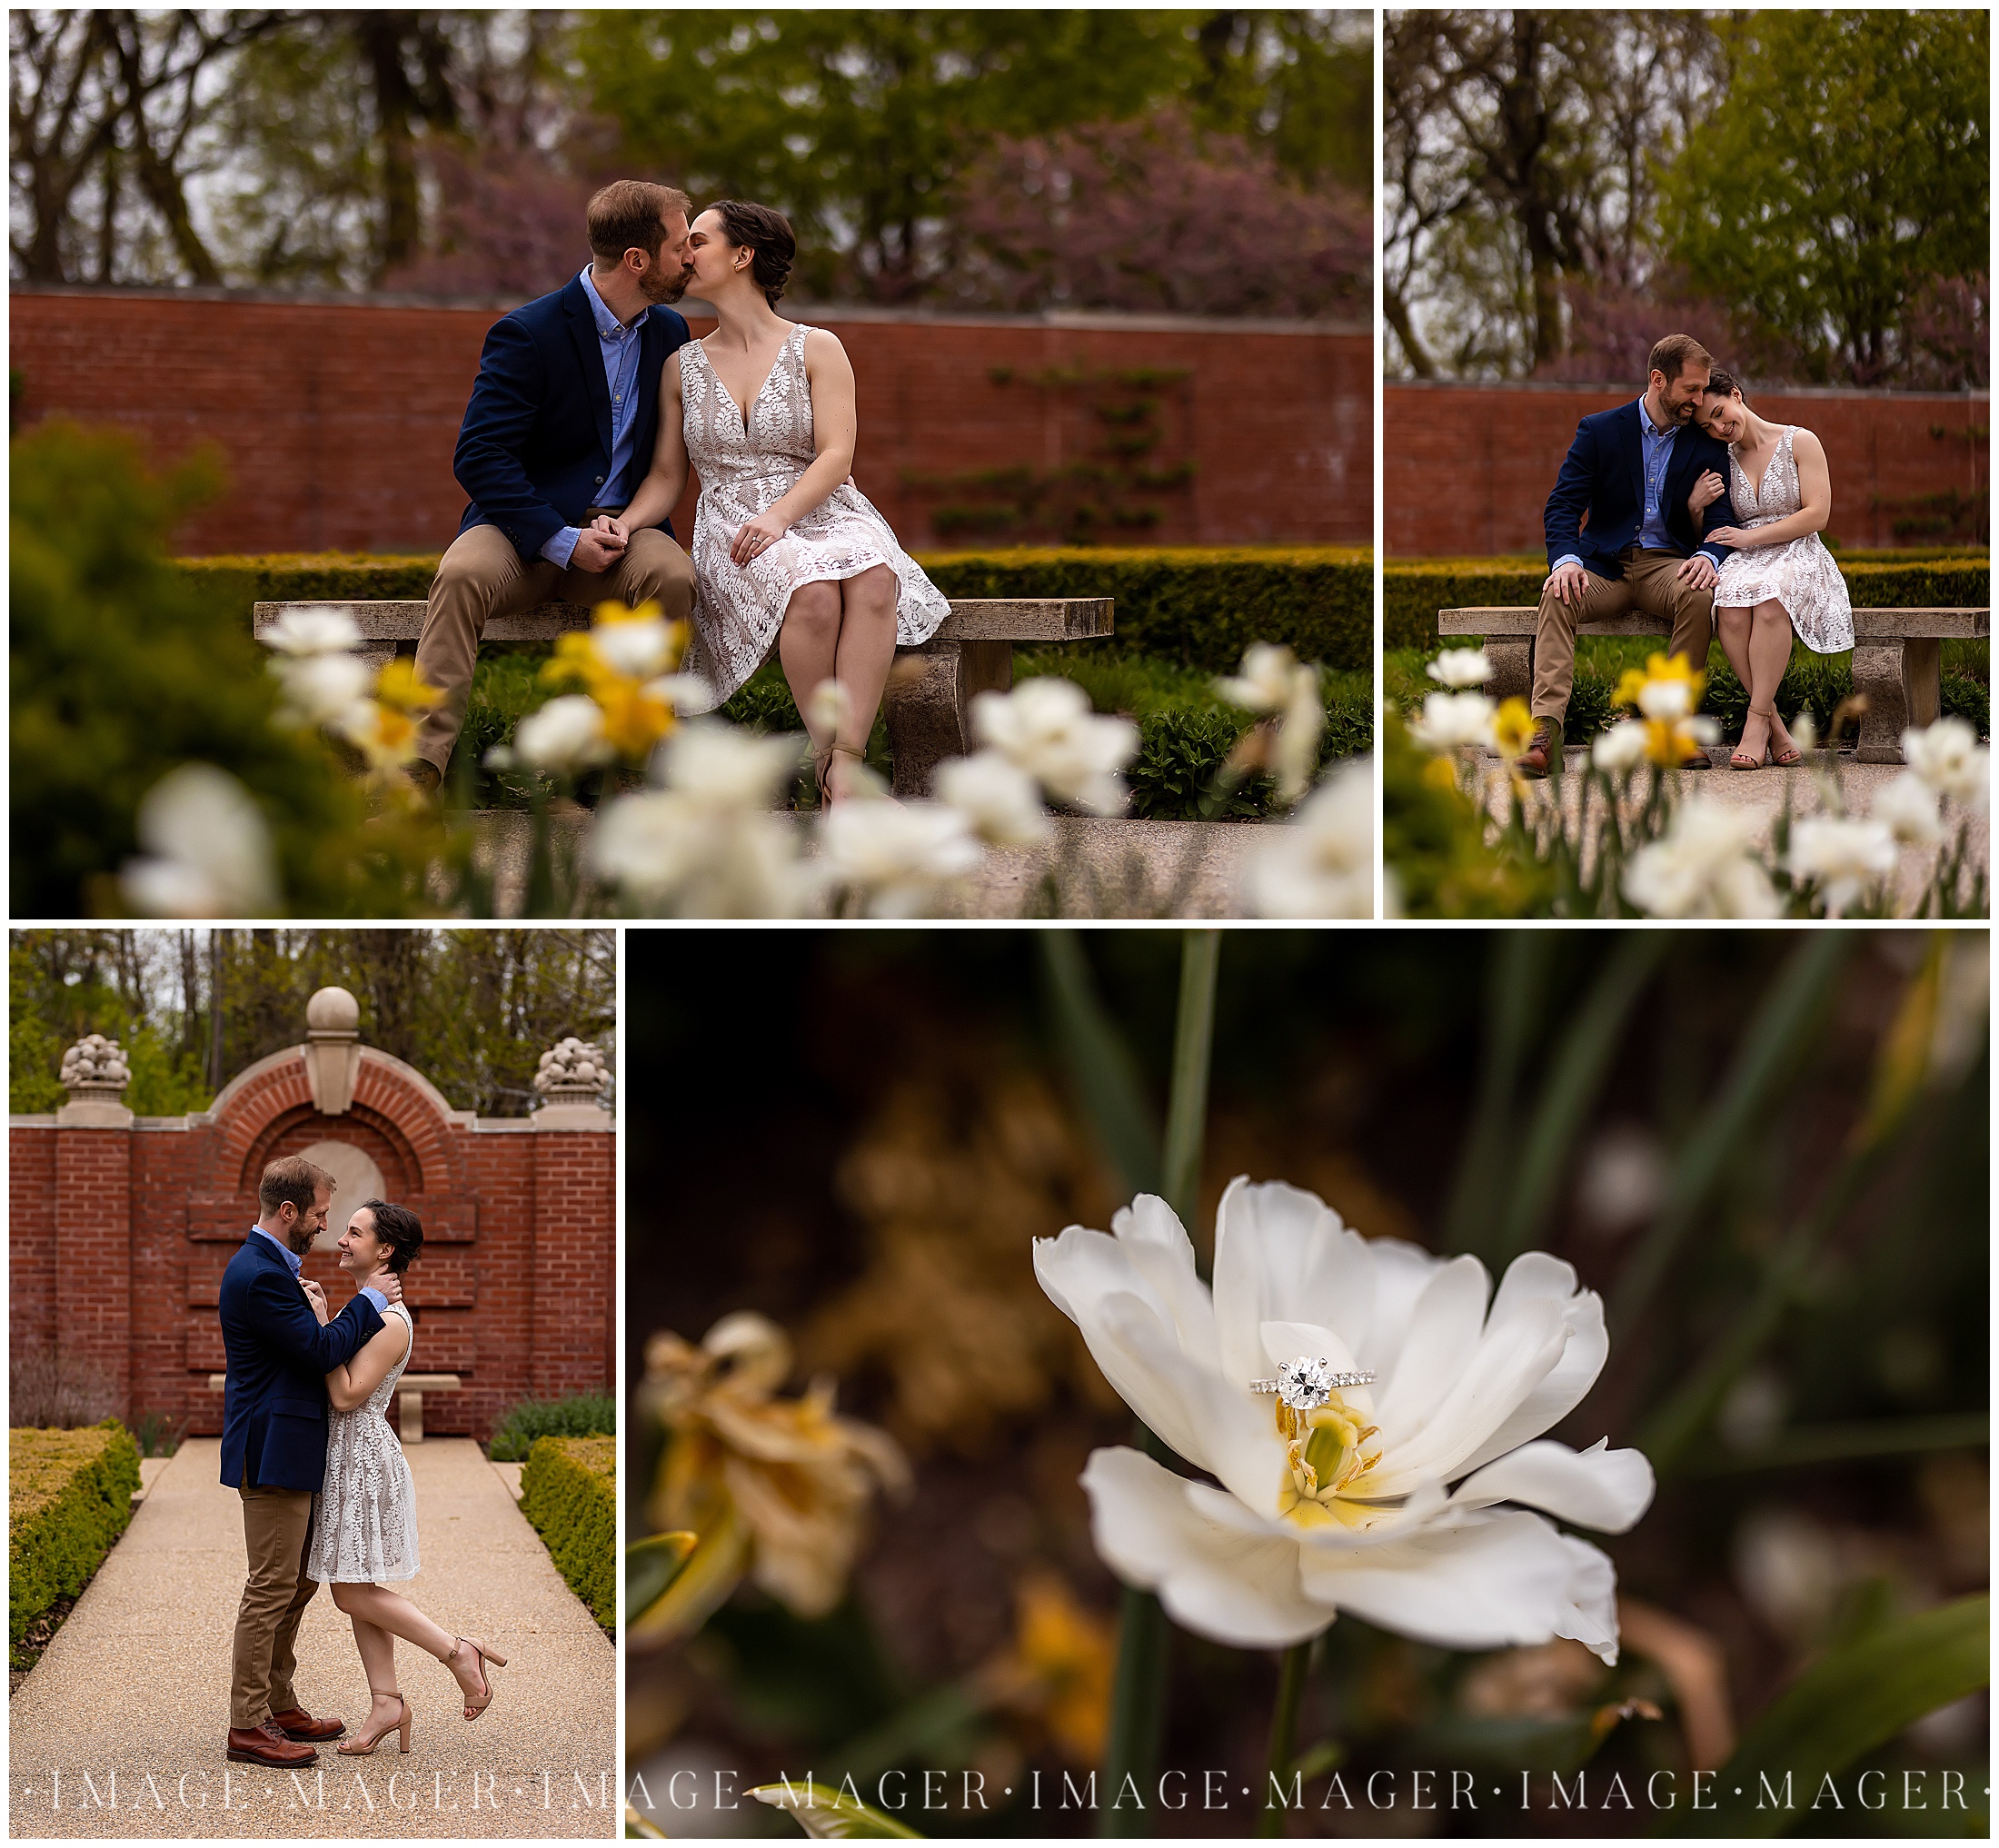 Caitlin and Ben in Allerton Park's Blooming Gardens